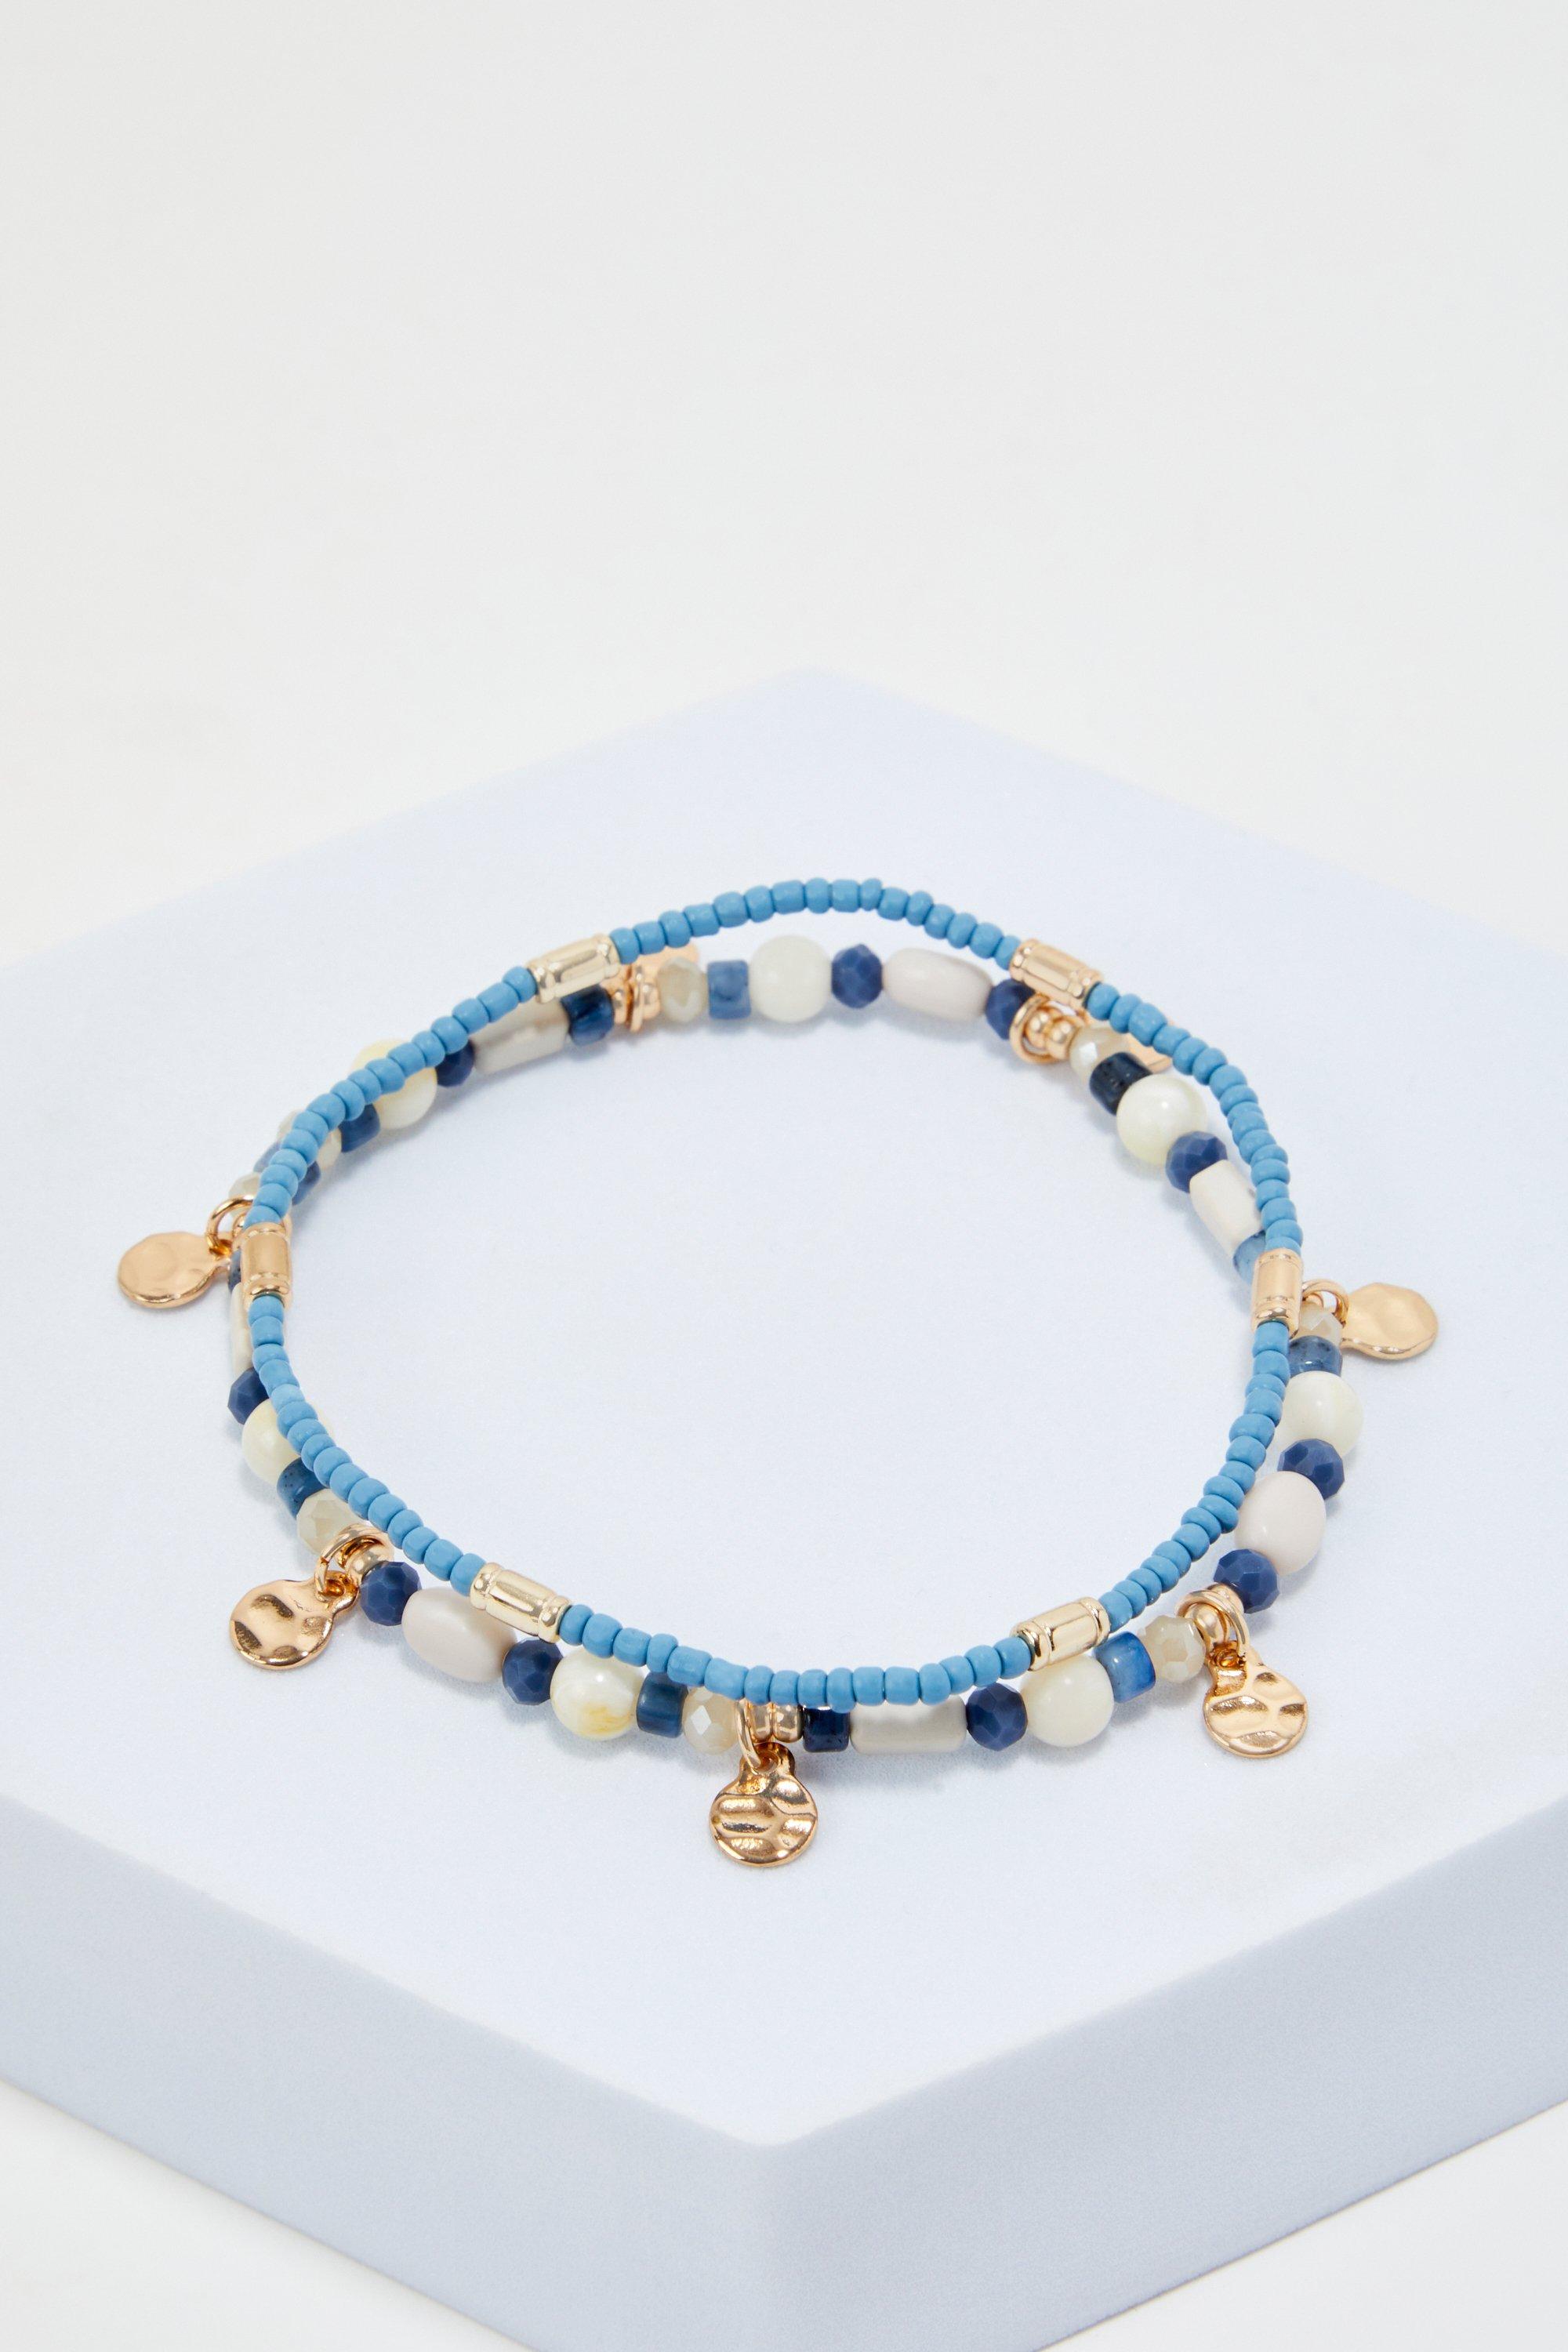 lot de 2 bracelets perlés homme - multicolore - one size, multicolore